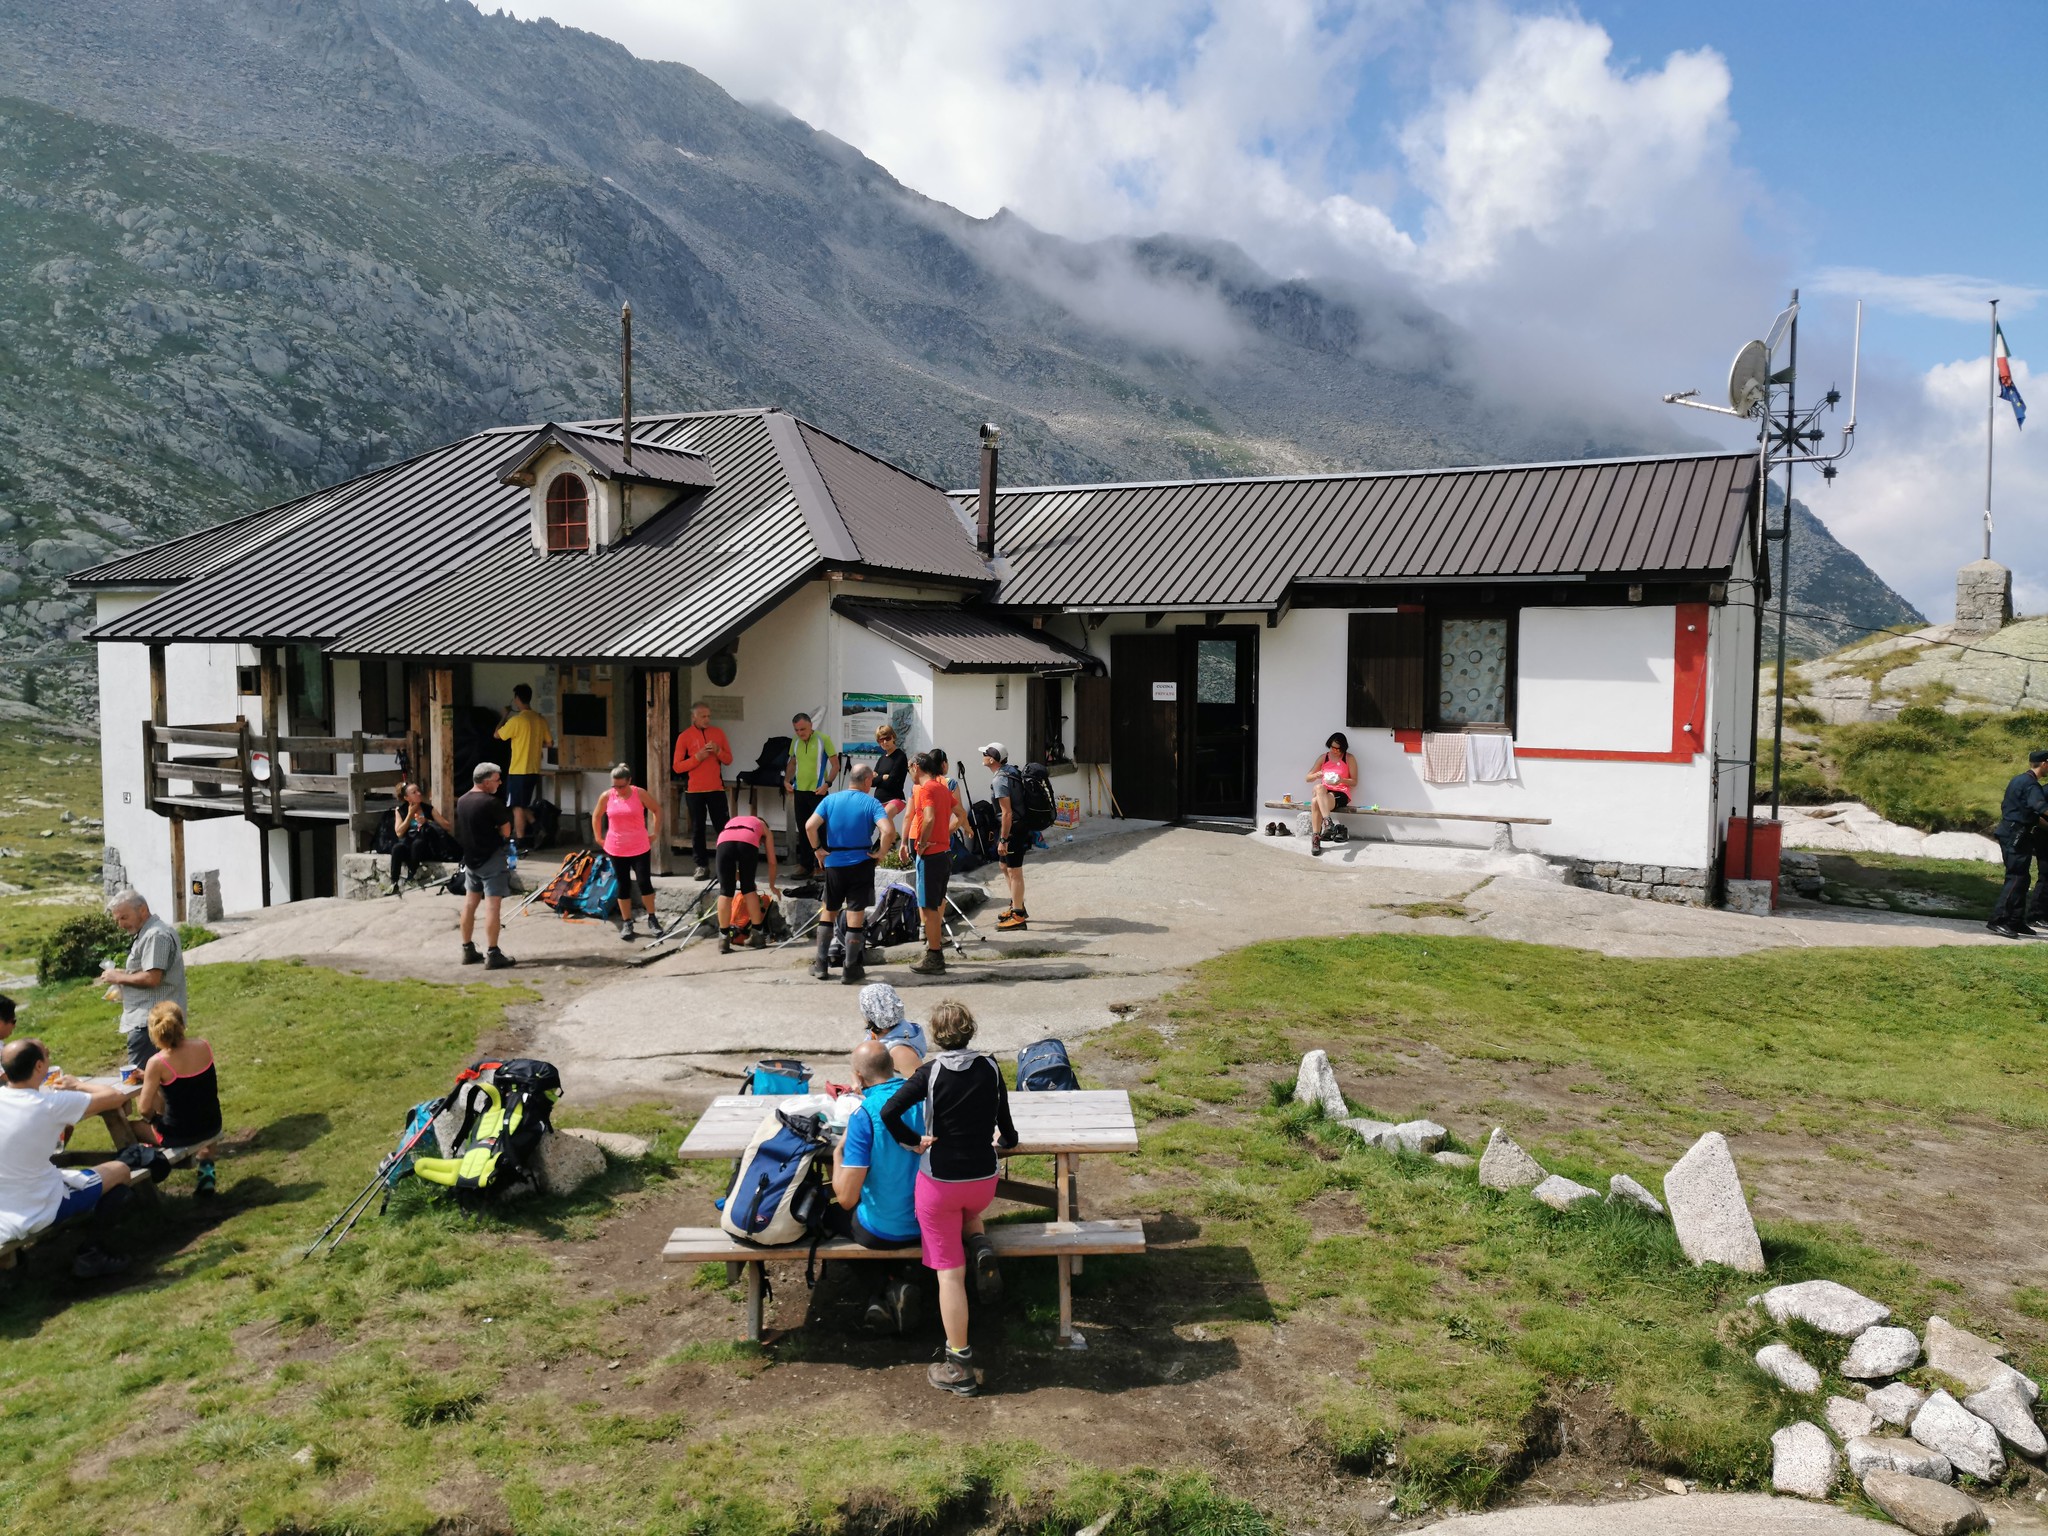 Il Club alpino italiano lavora perchè quest’estate i rifugi possano riaprire